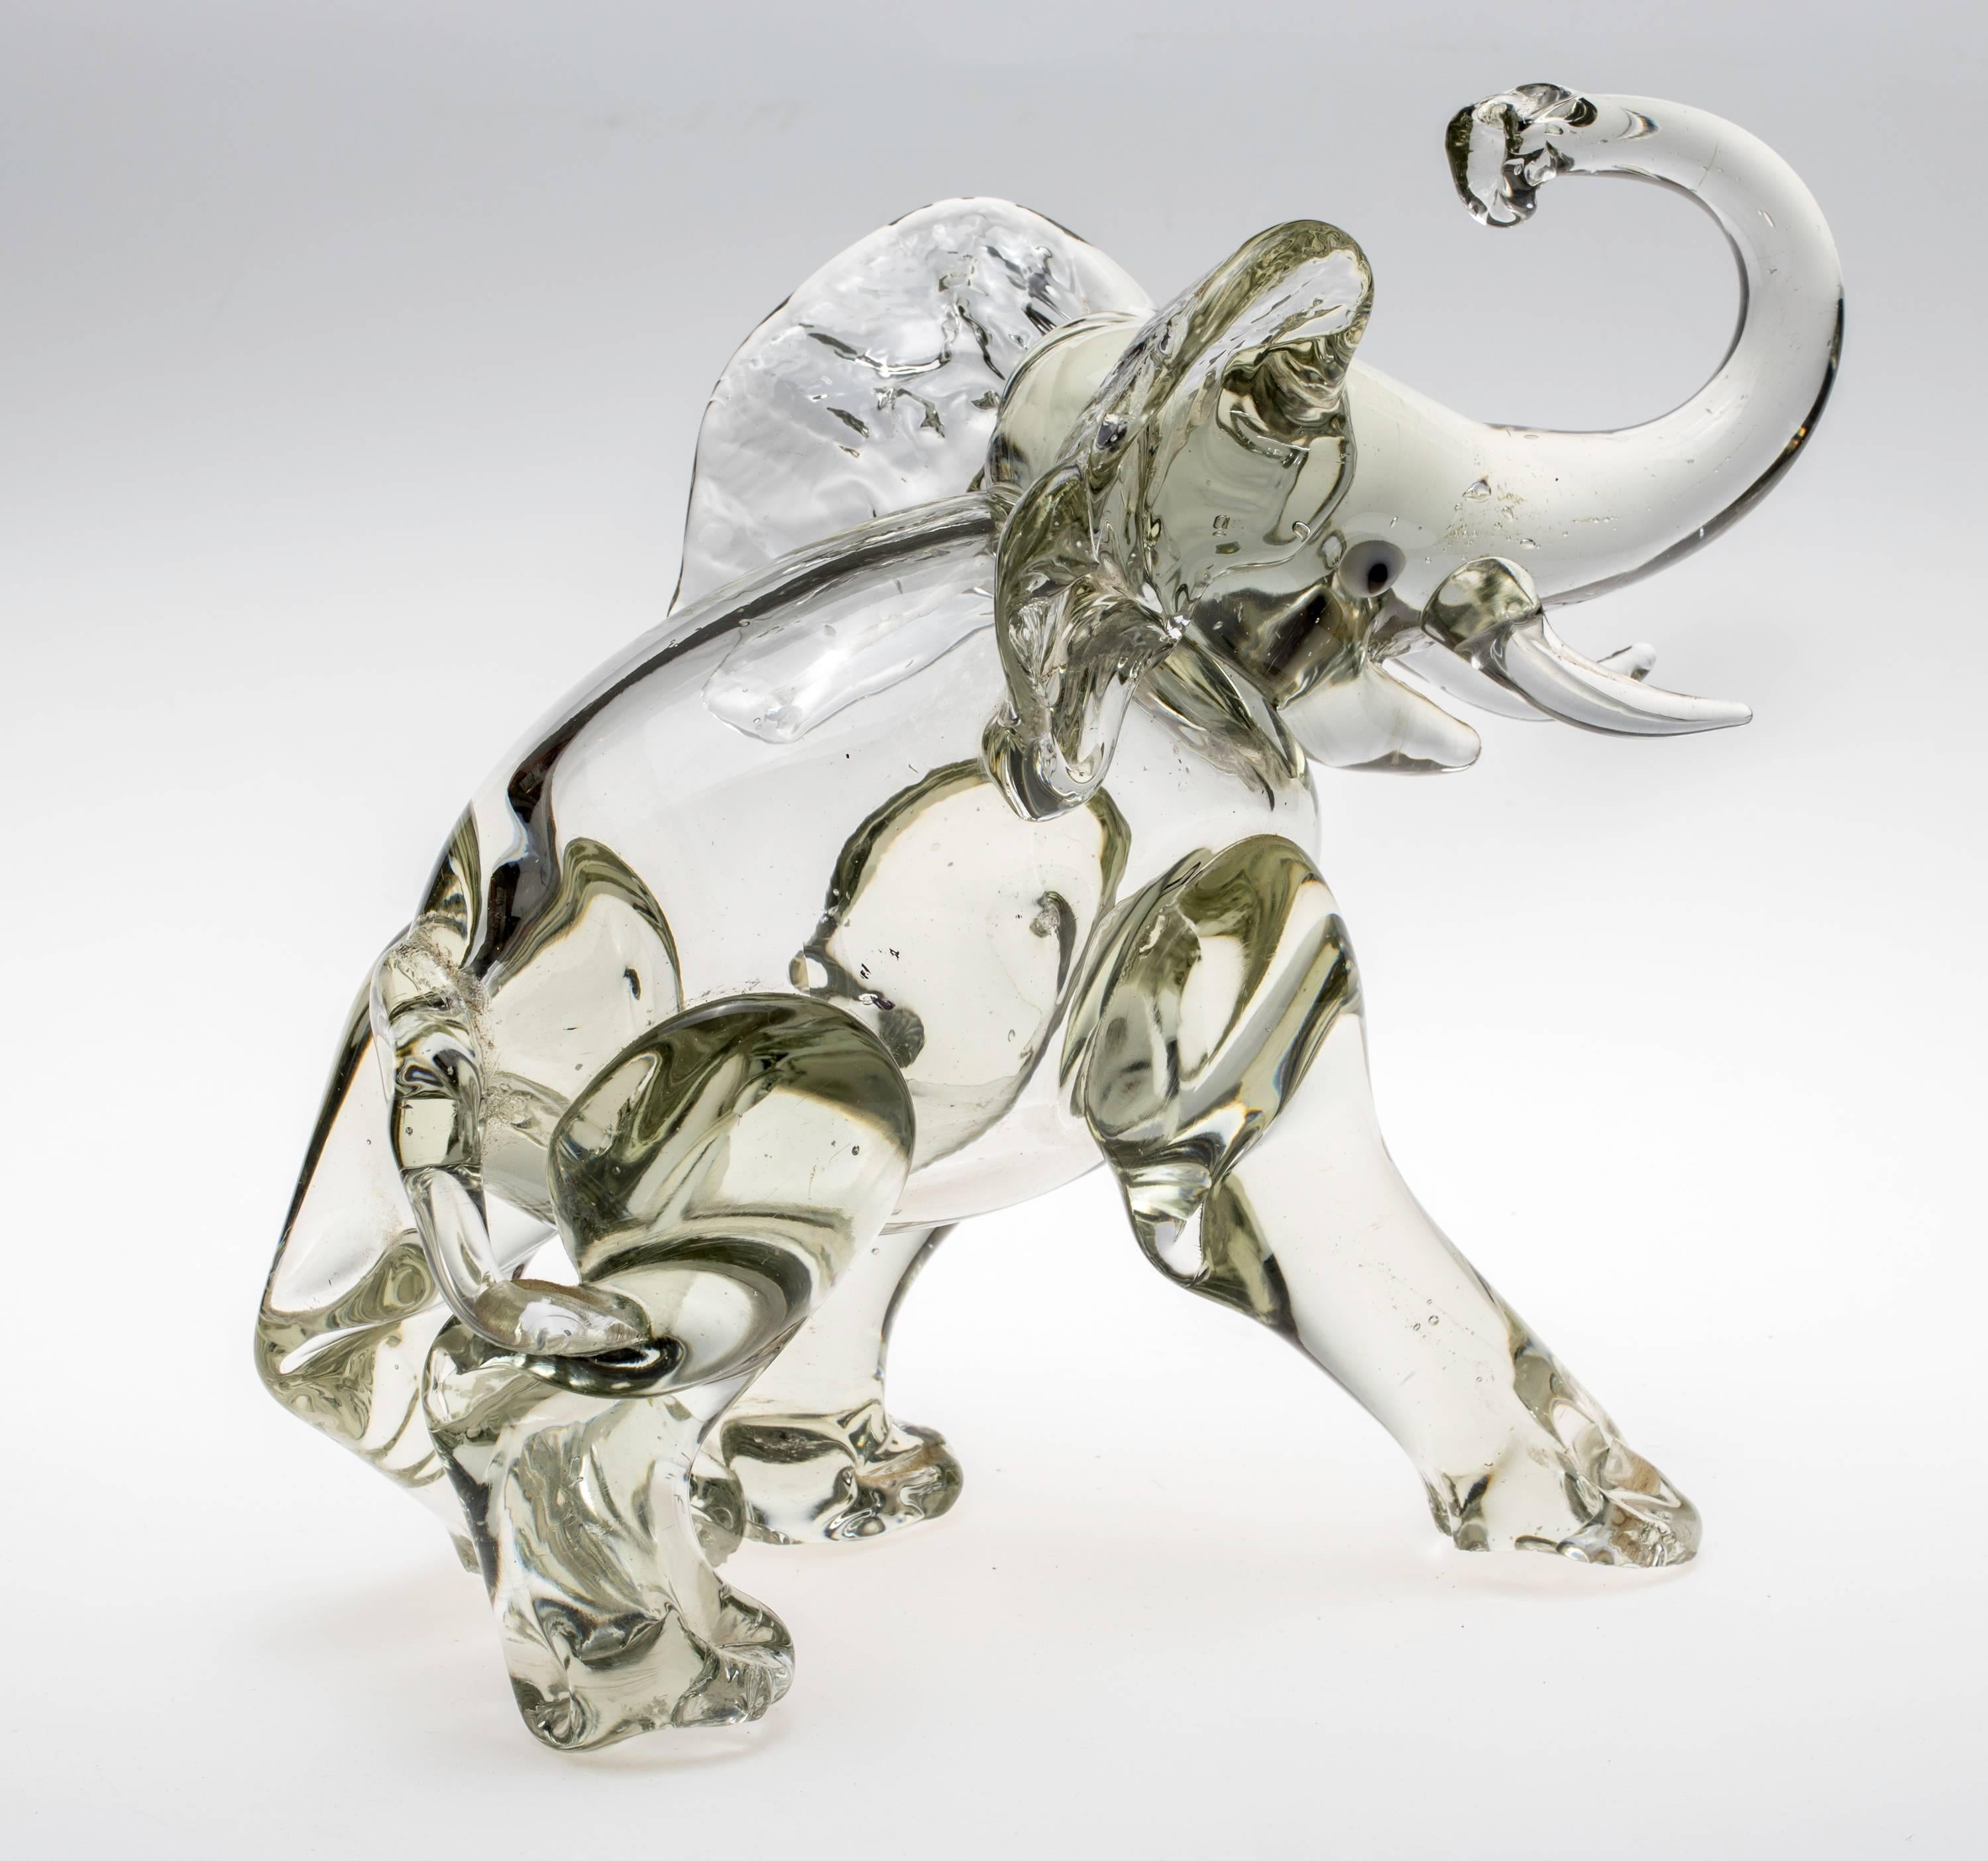 glass elephants figurines